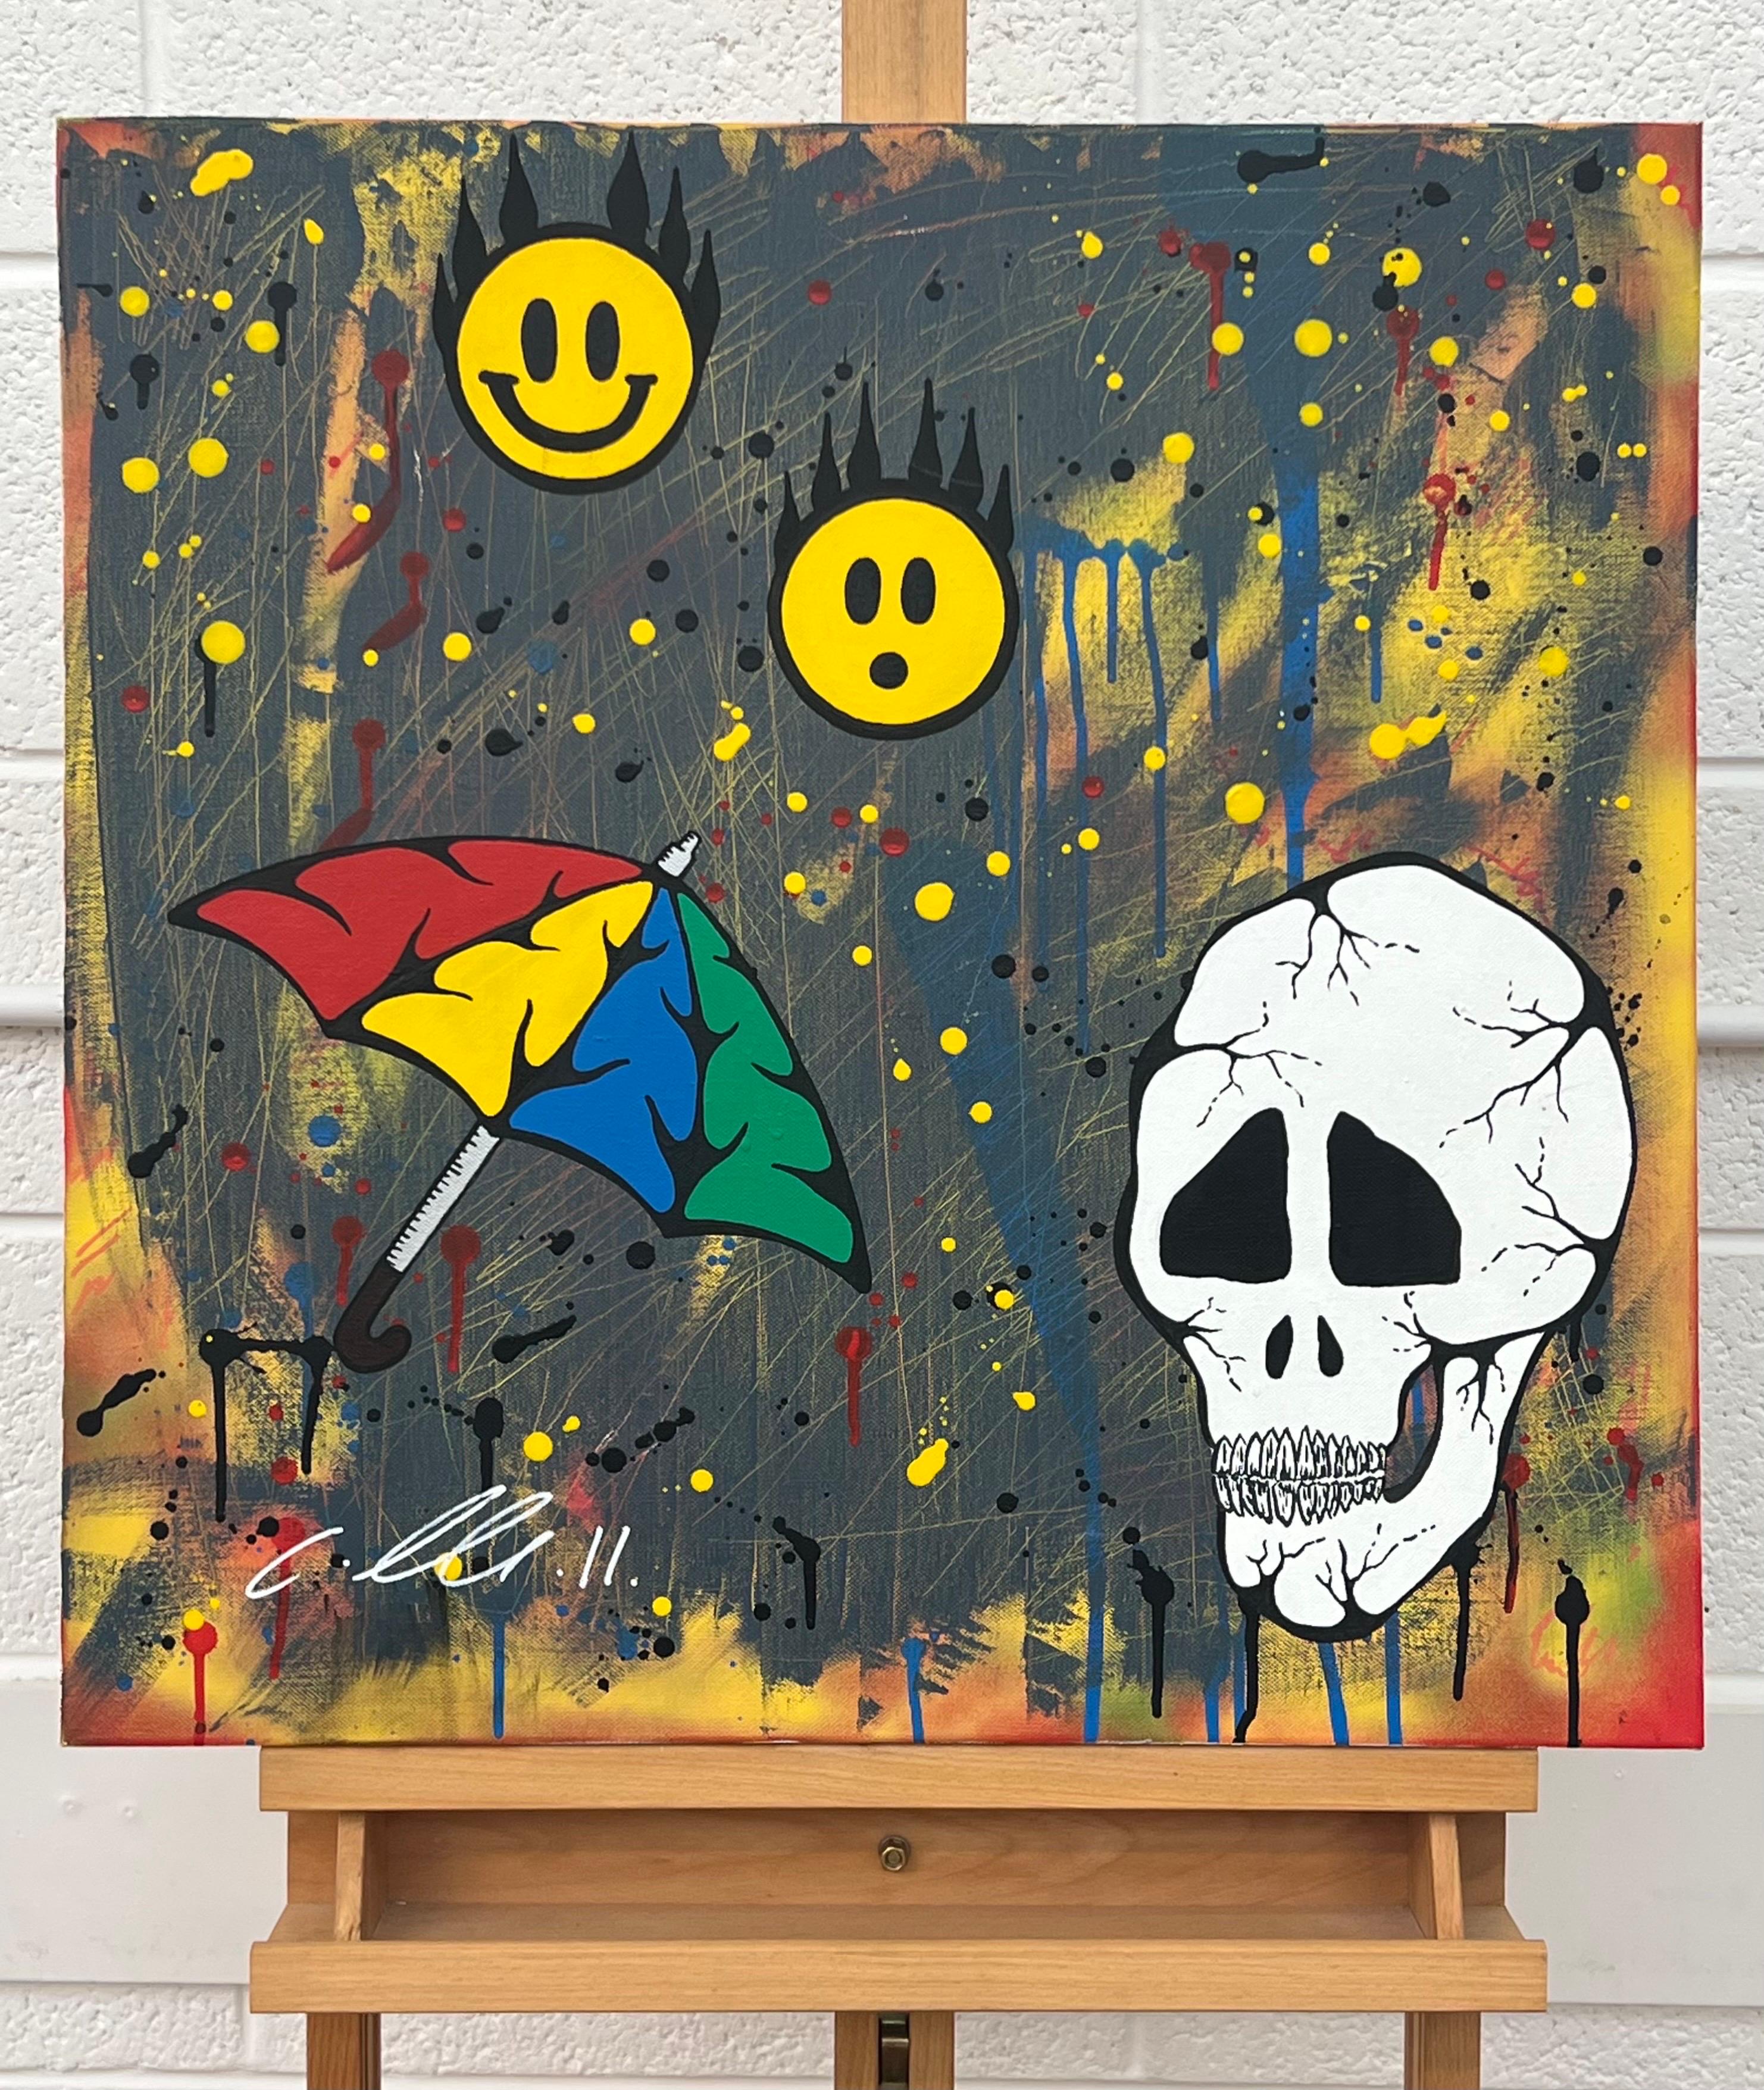 Skull & Emoji Cartoon Pop Art auf abstraktem Hintergrund vom britischen Urban Graffiti Artist, Chris Pegg. Chris Pegg ist ein autodidaktischer Street Artist, der Kunstwerke mit einem starken sozialen Kommentar produziert. 

Seine Arbeit ist von